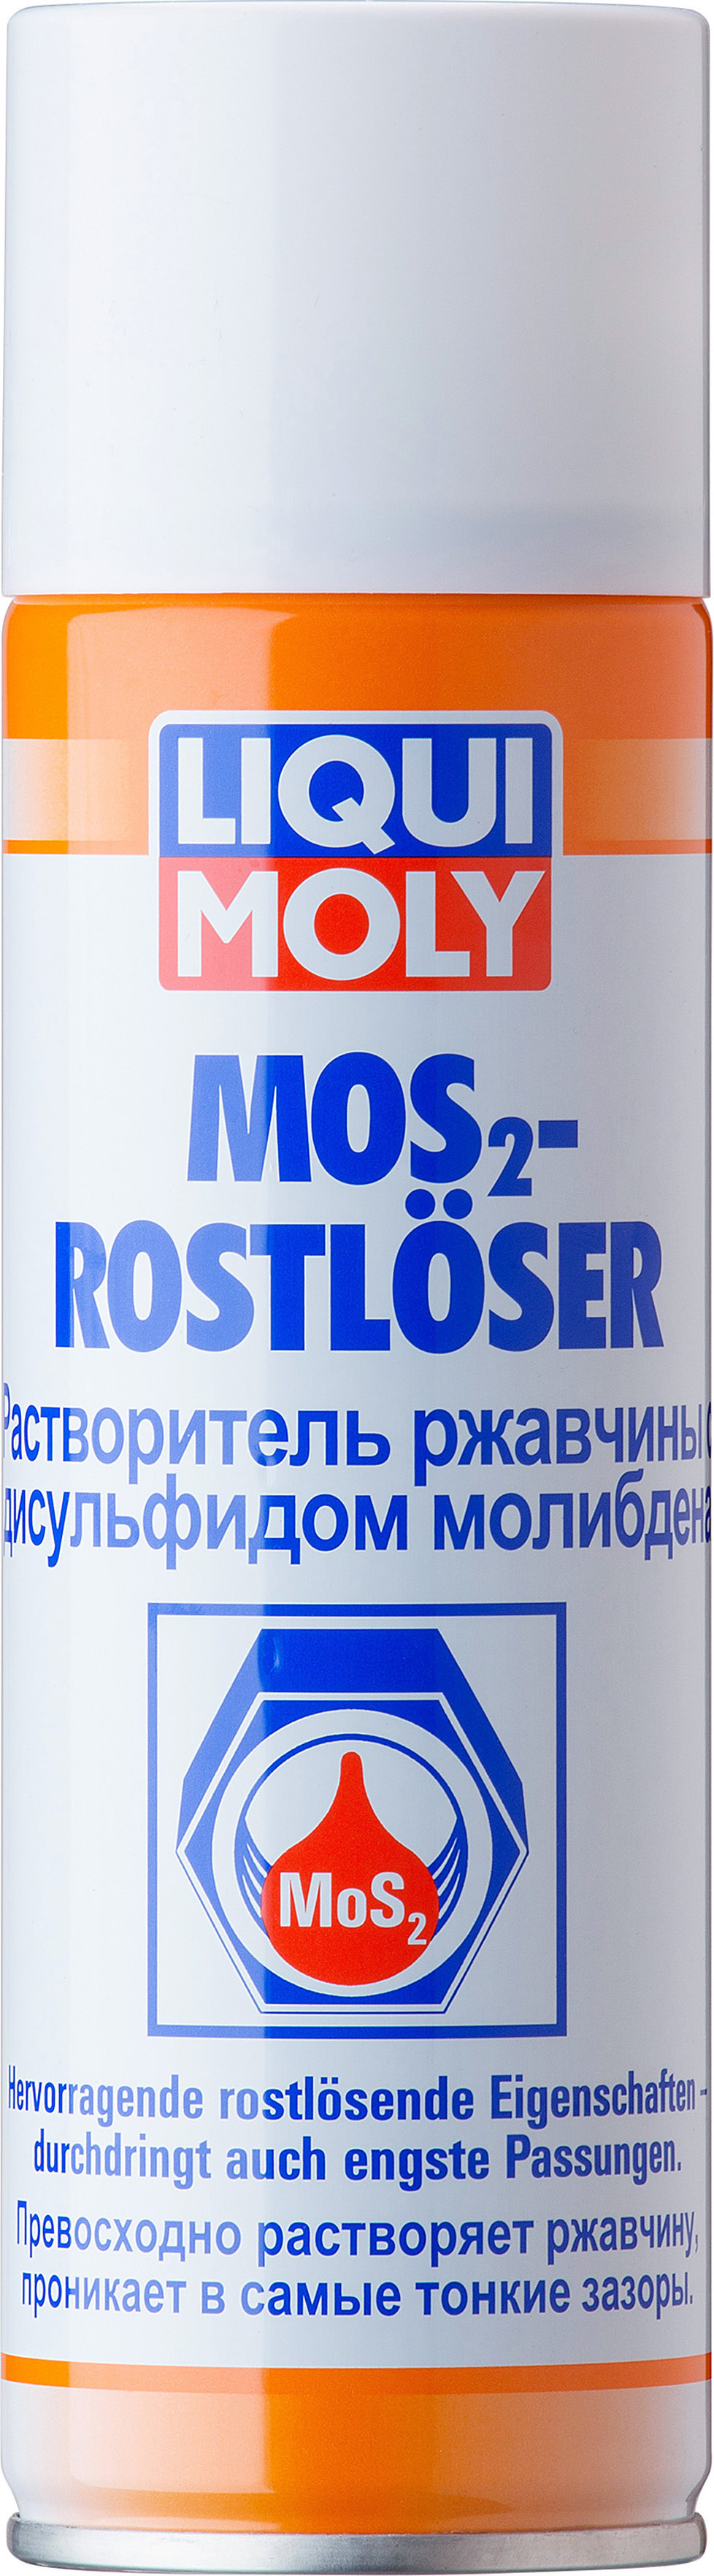 Растворитель ржавчины с дисульфидом молибдена LIQUI MOLY MoS2-Rostloser XXL (0,3 литра)